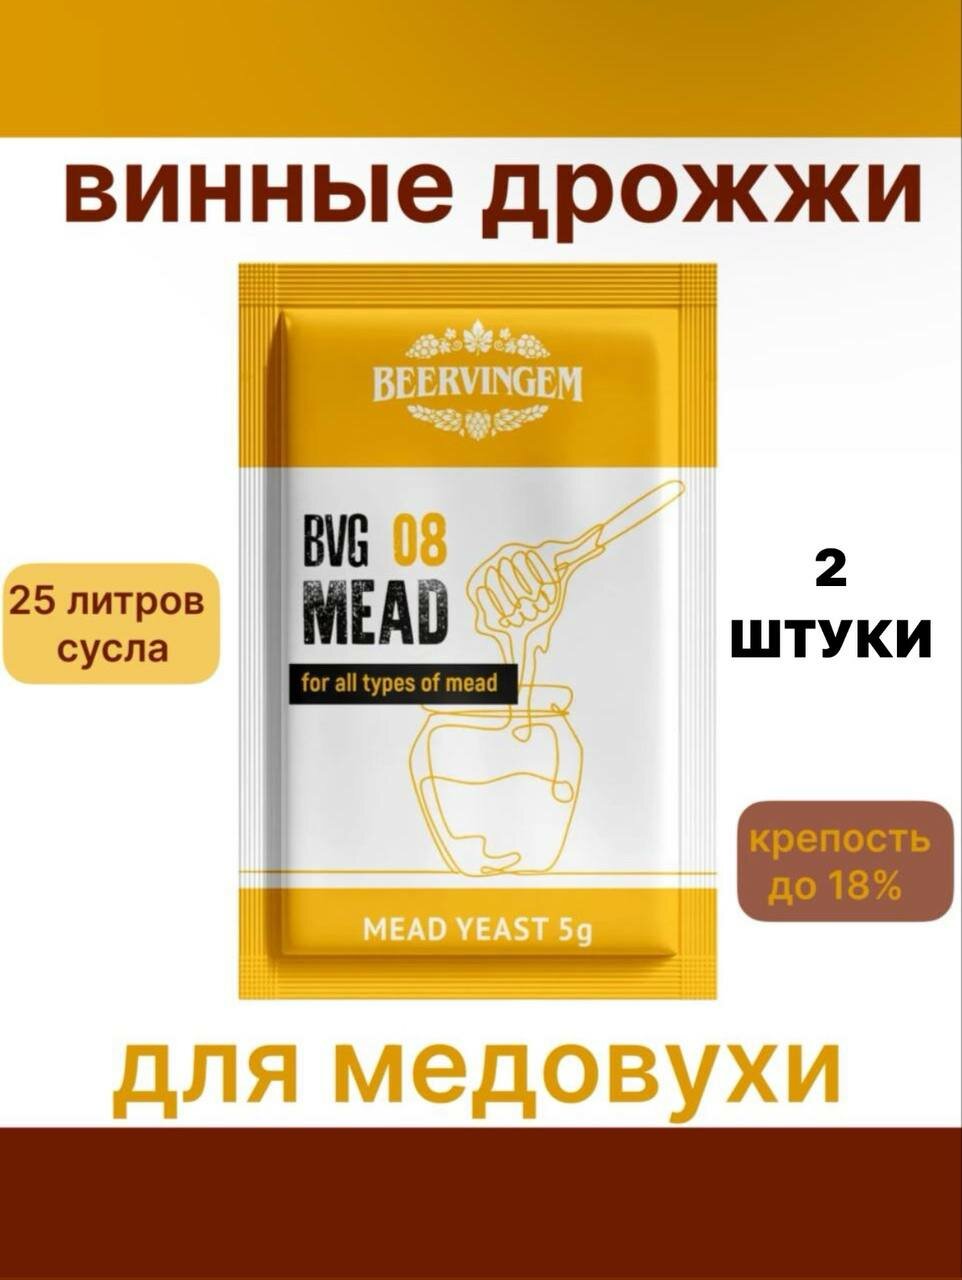 Винные дрожжи Beervingem для медовухи "Mead BVG-08"-2 шт